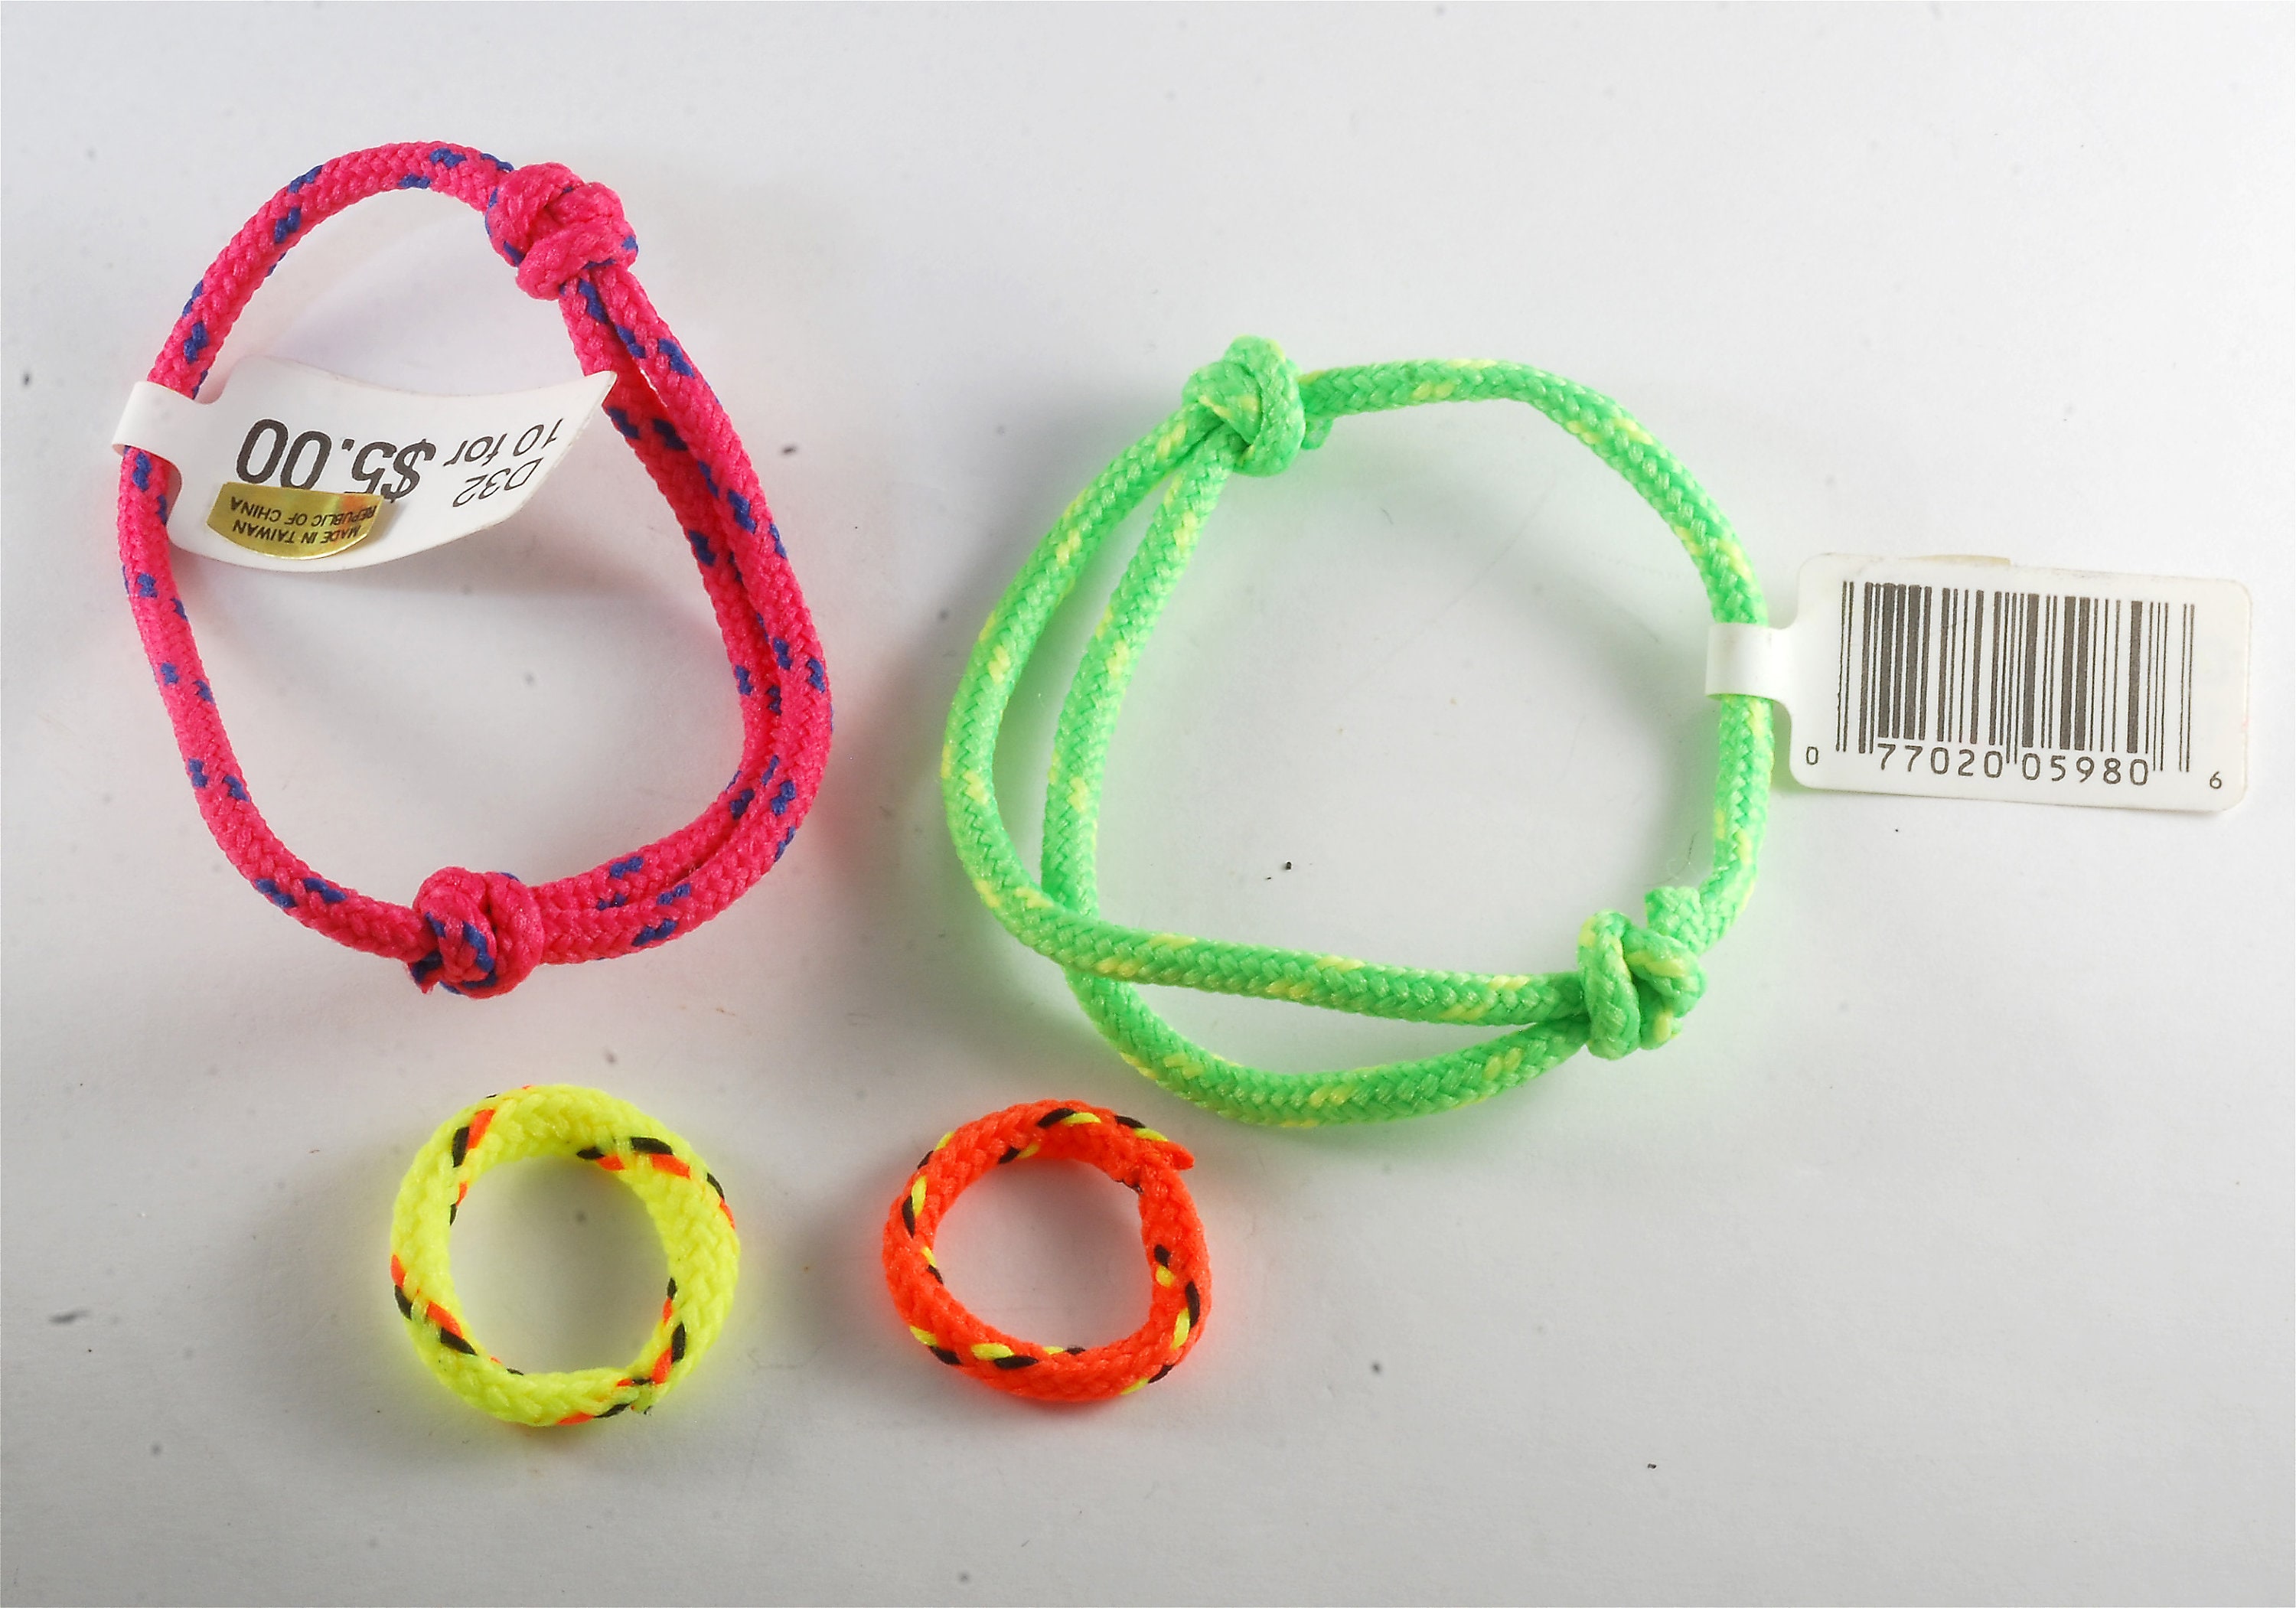 Friendship bracelets: Taylor Swift sparks DIY trend on Long Island - Newsday